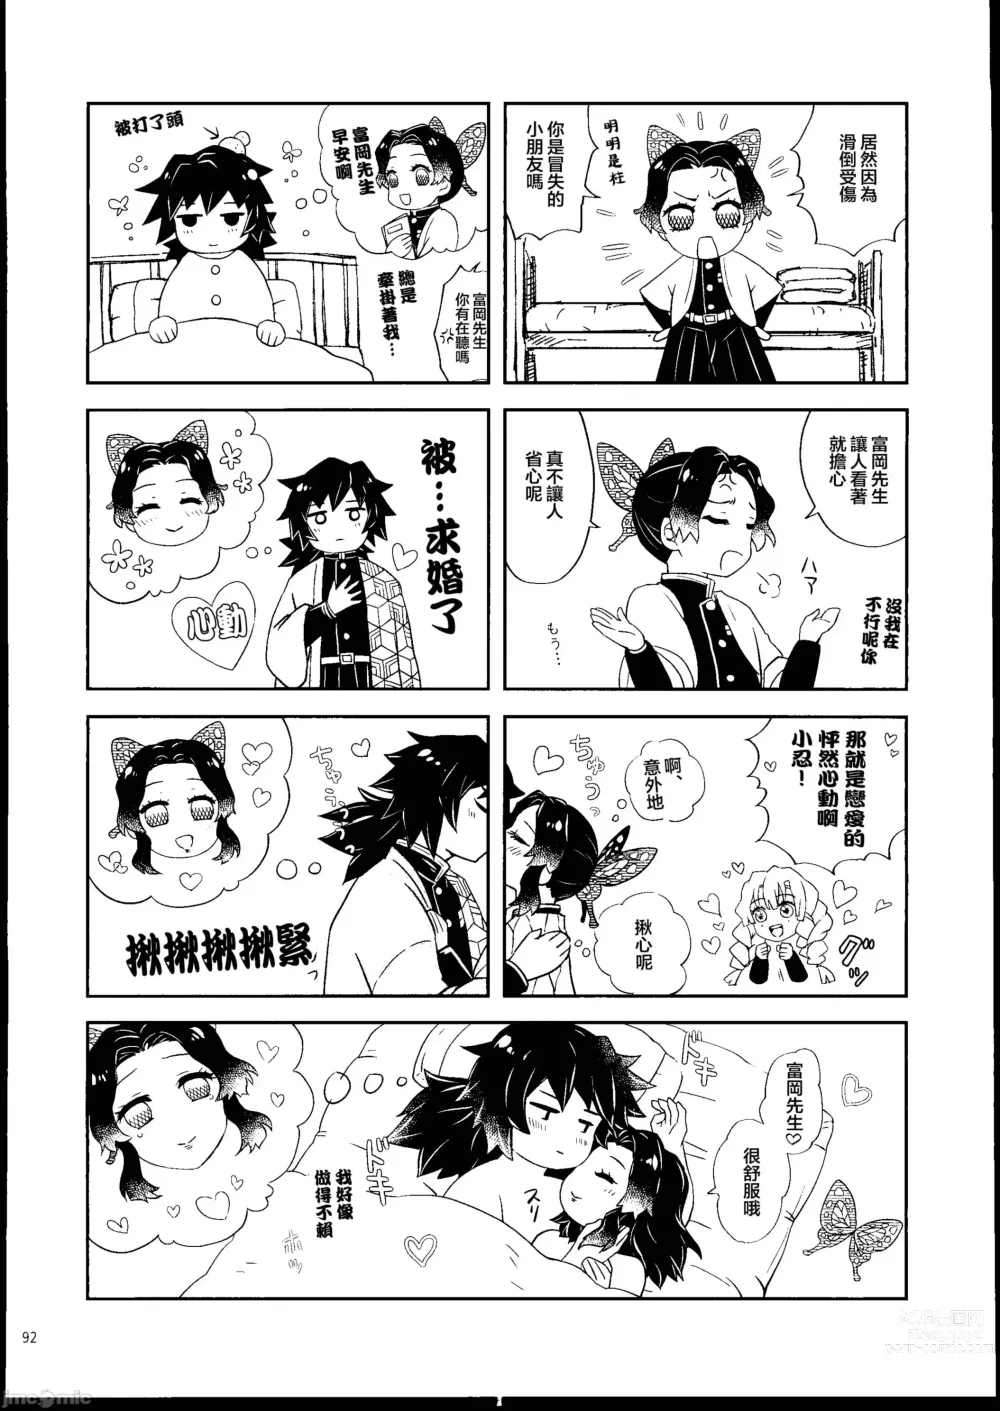 Page 91 of doujinshi Aigi Hanashi